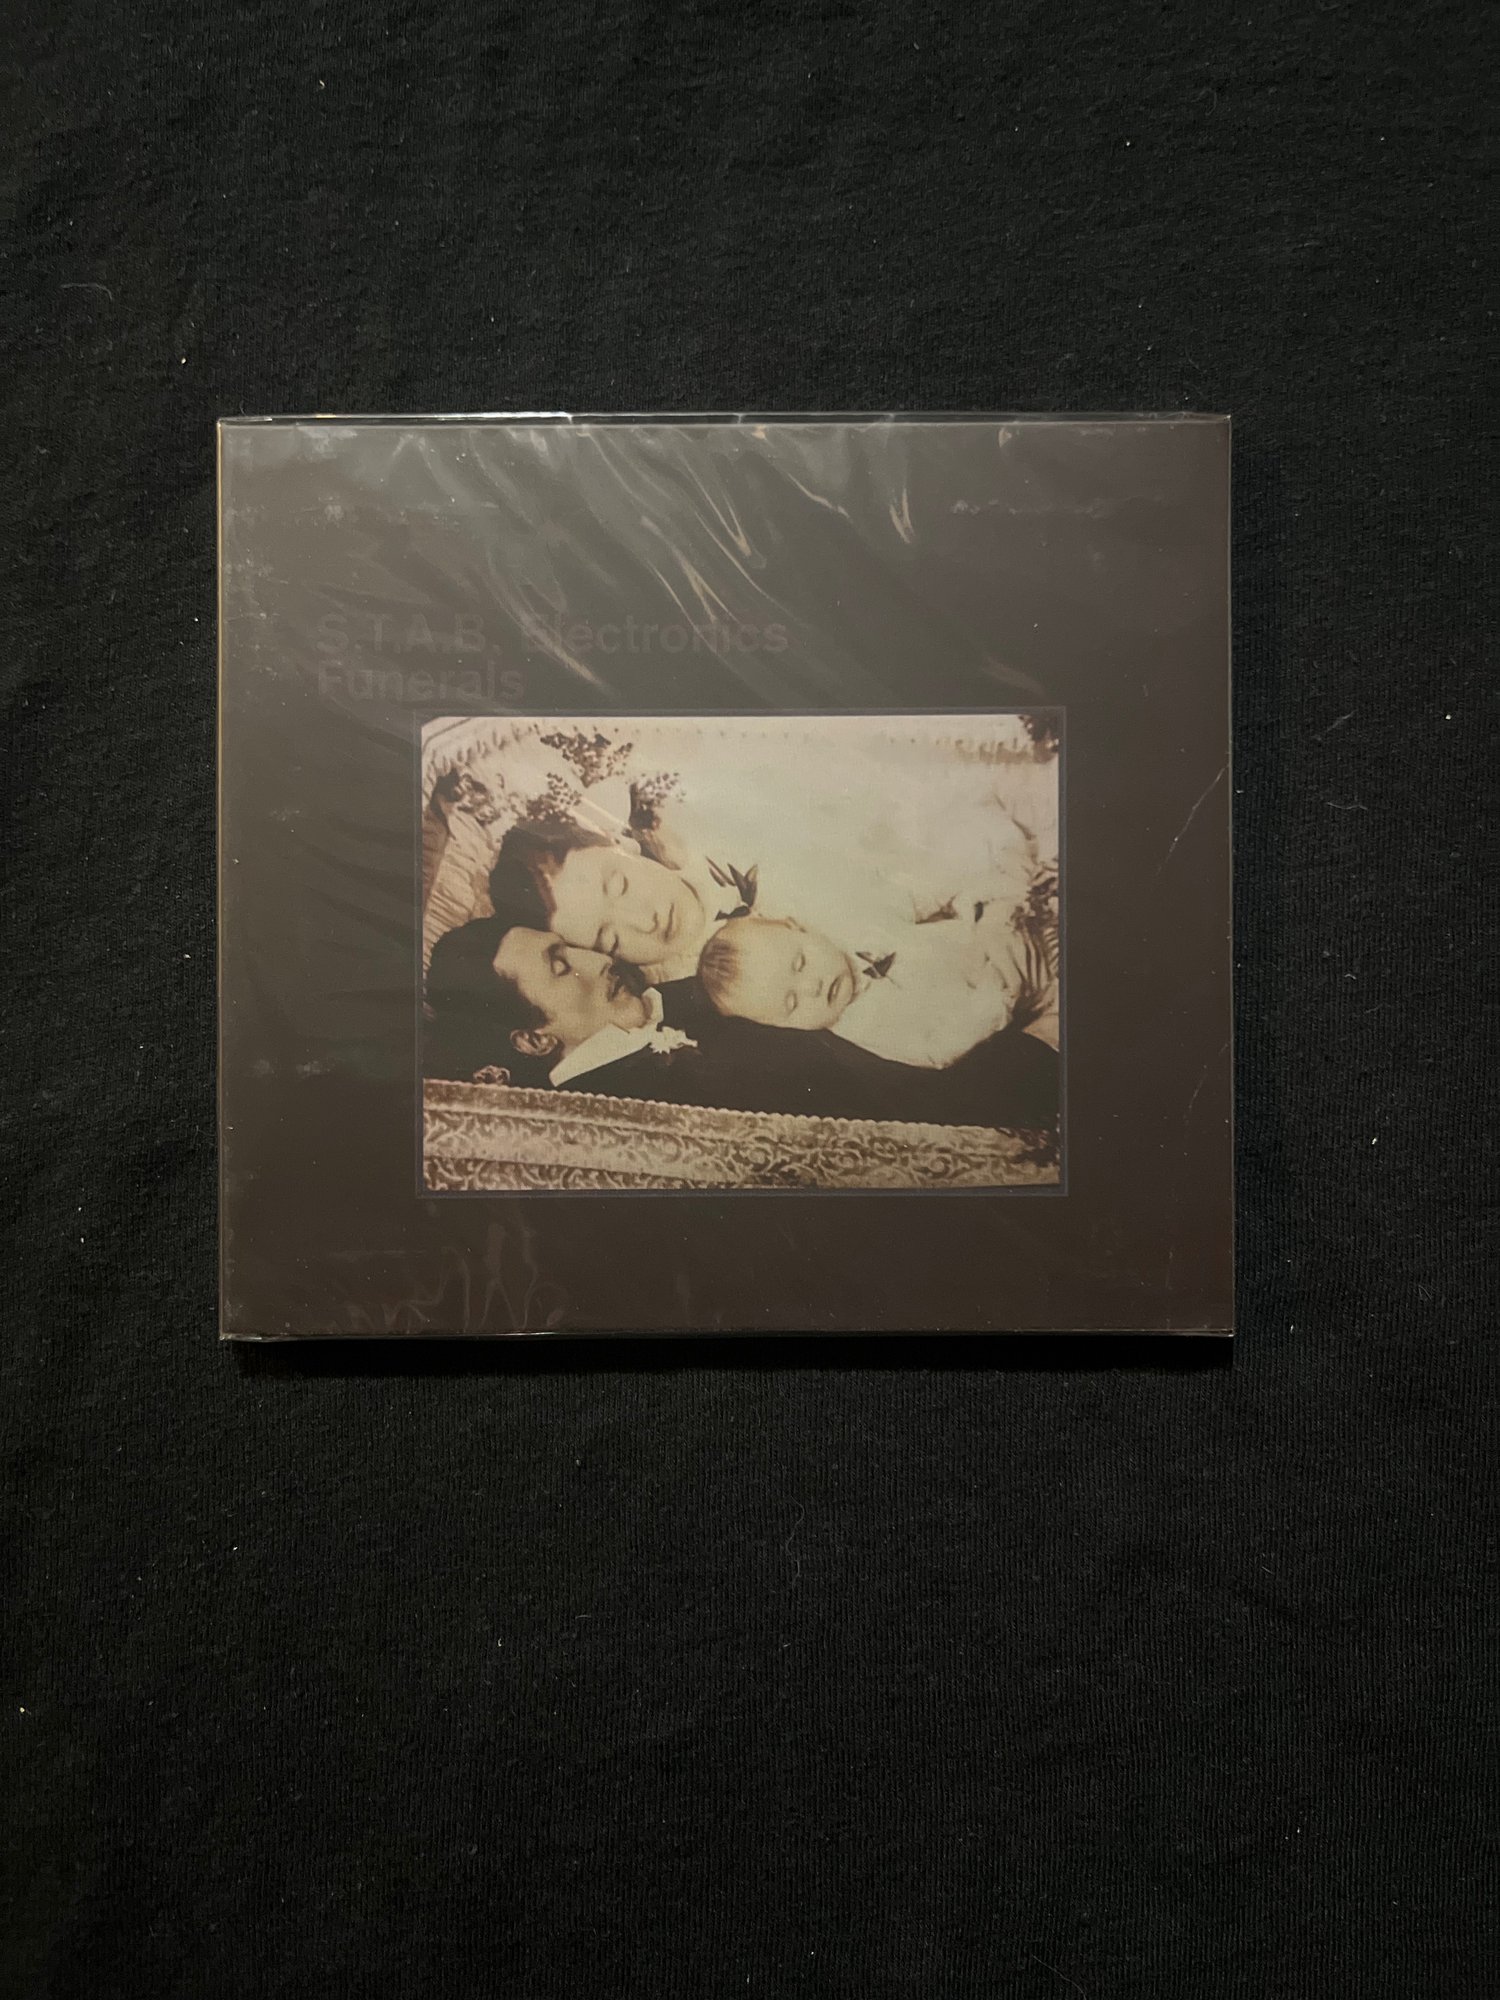 S.T.A.B. Electronics - Funerals (Ten Little Deaths) CD (OEC)